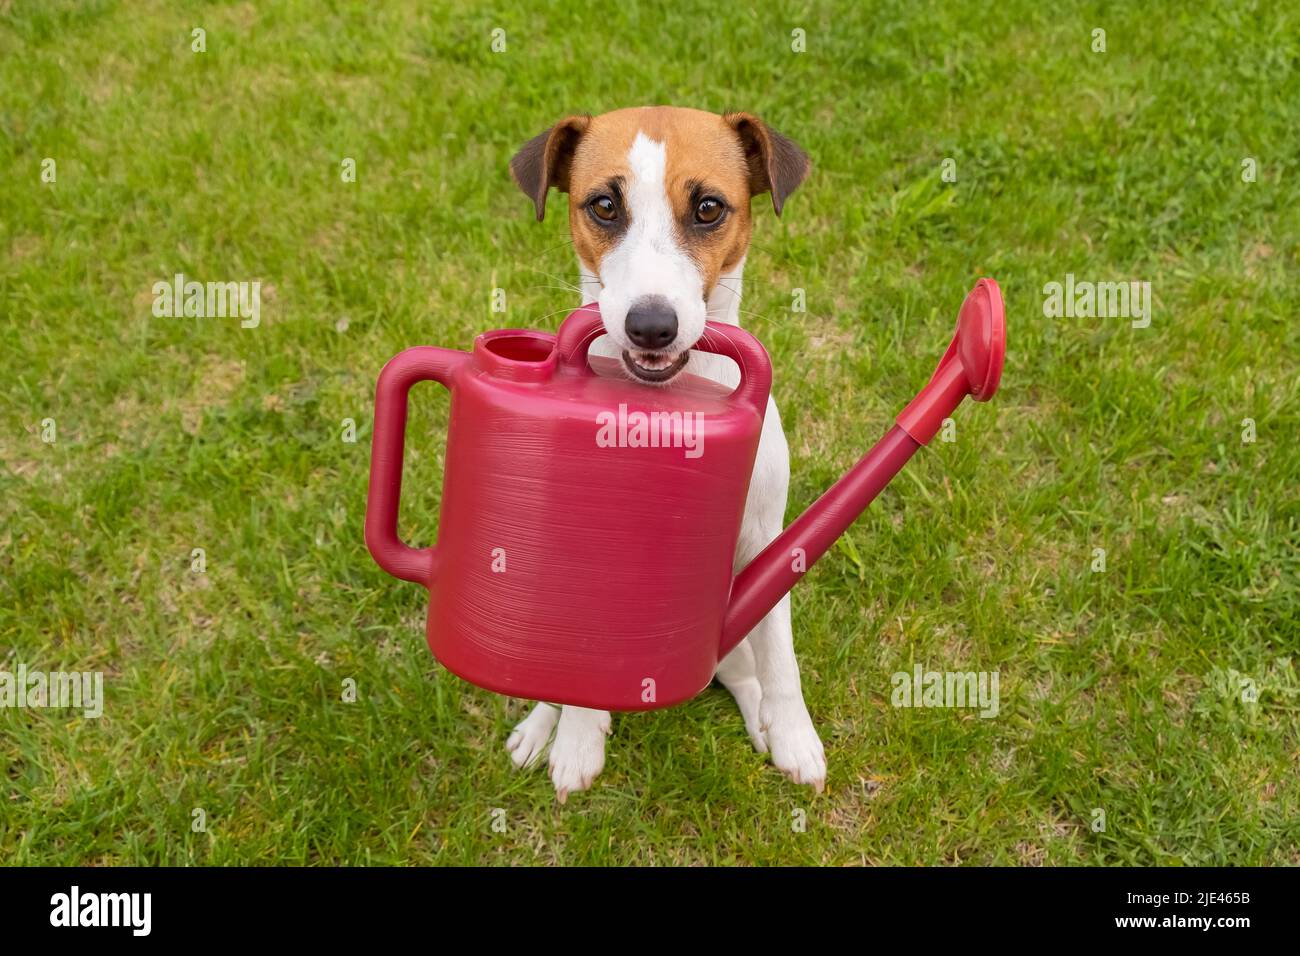 Le chien Jack Russell Terrier est debout sur la pelouse et tient un arrosoir Banque D'Images